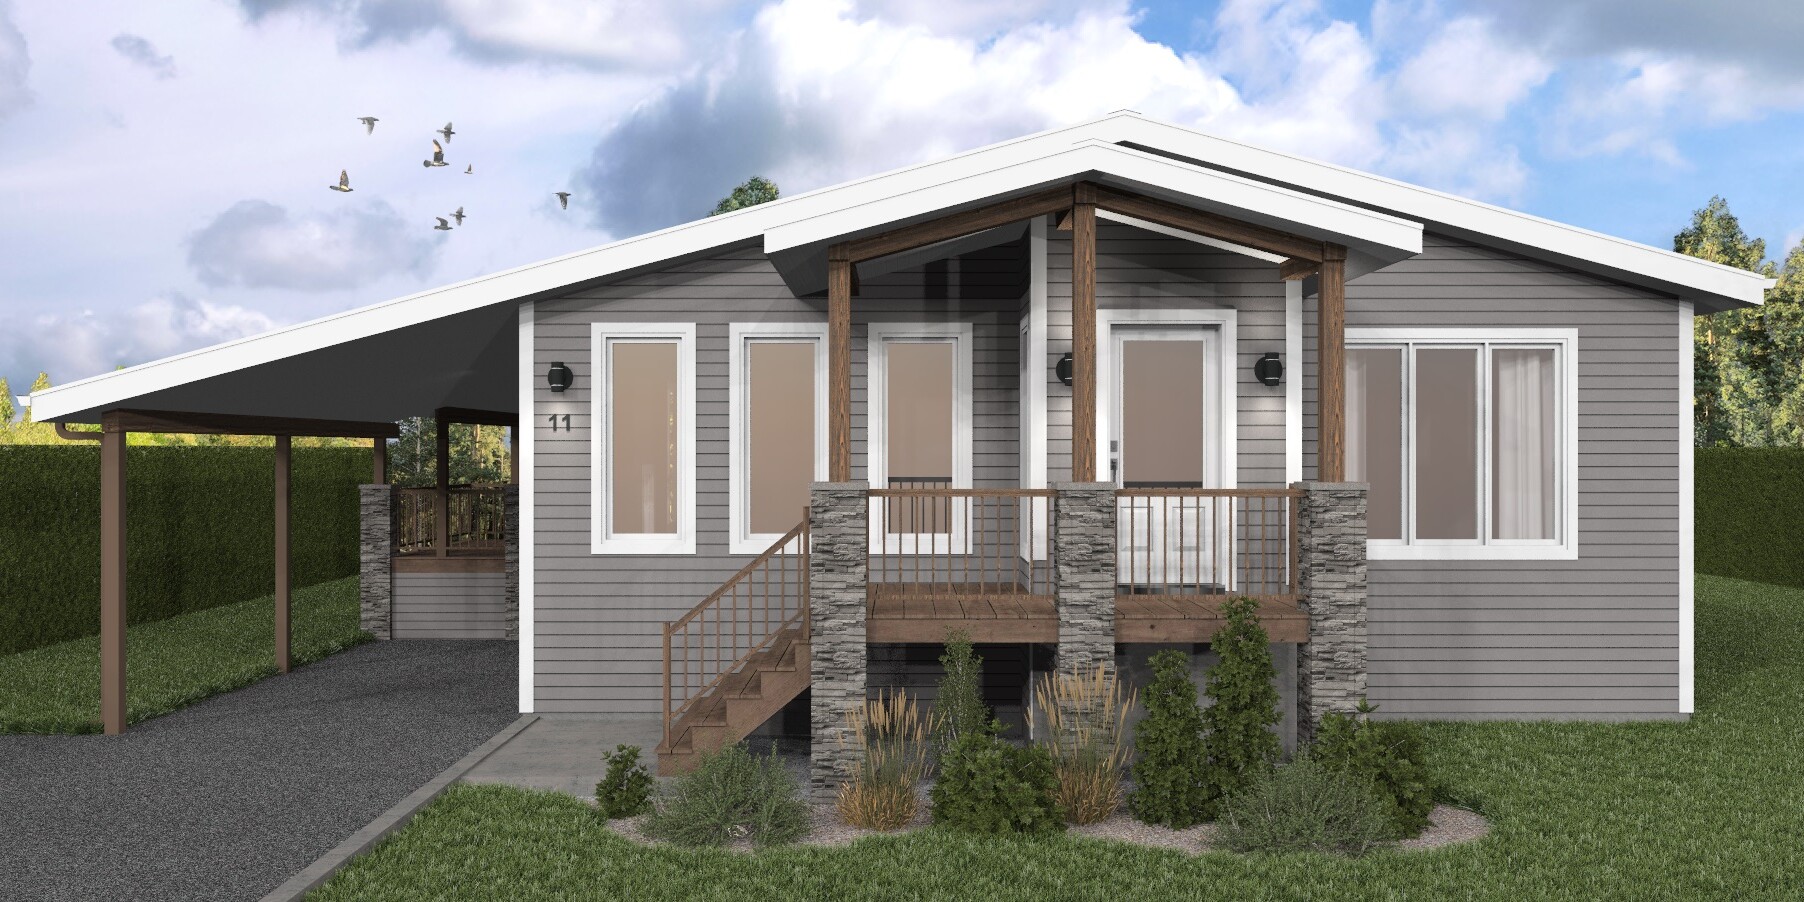 Projet Design exterieur 2020-DE001-3.2 maison a Amos en Abitibi visuel 3.2 modifie